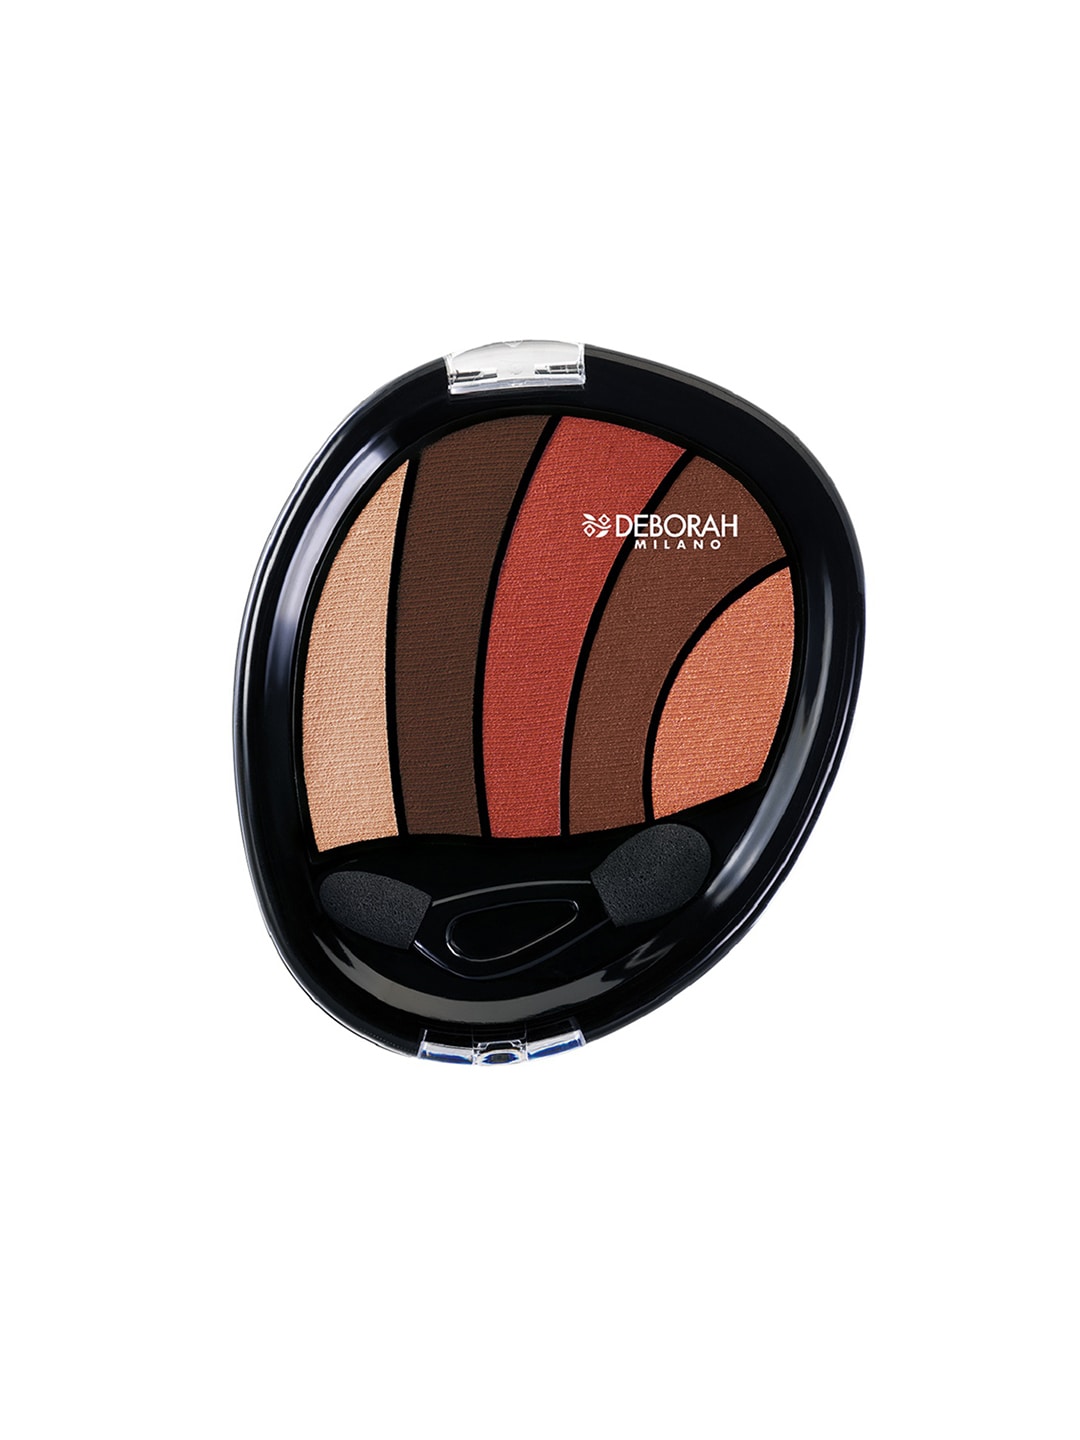 Deborah Milano Perfect Smokey Eye Saffron Eyeshadow Palette 07 Price in India